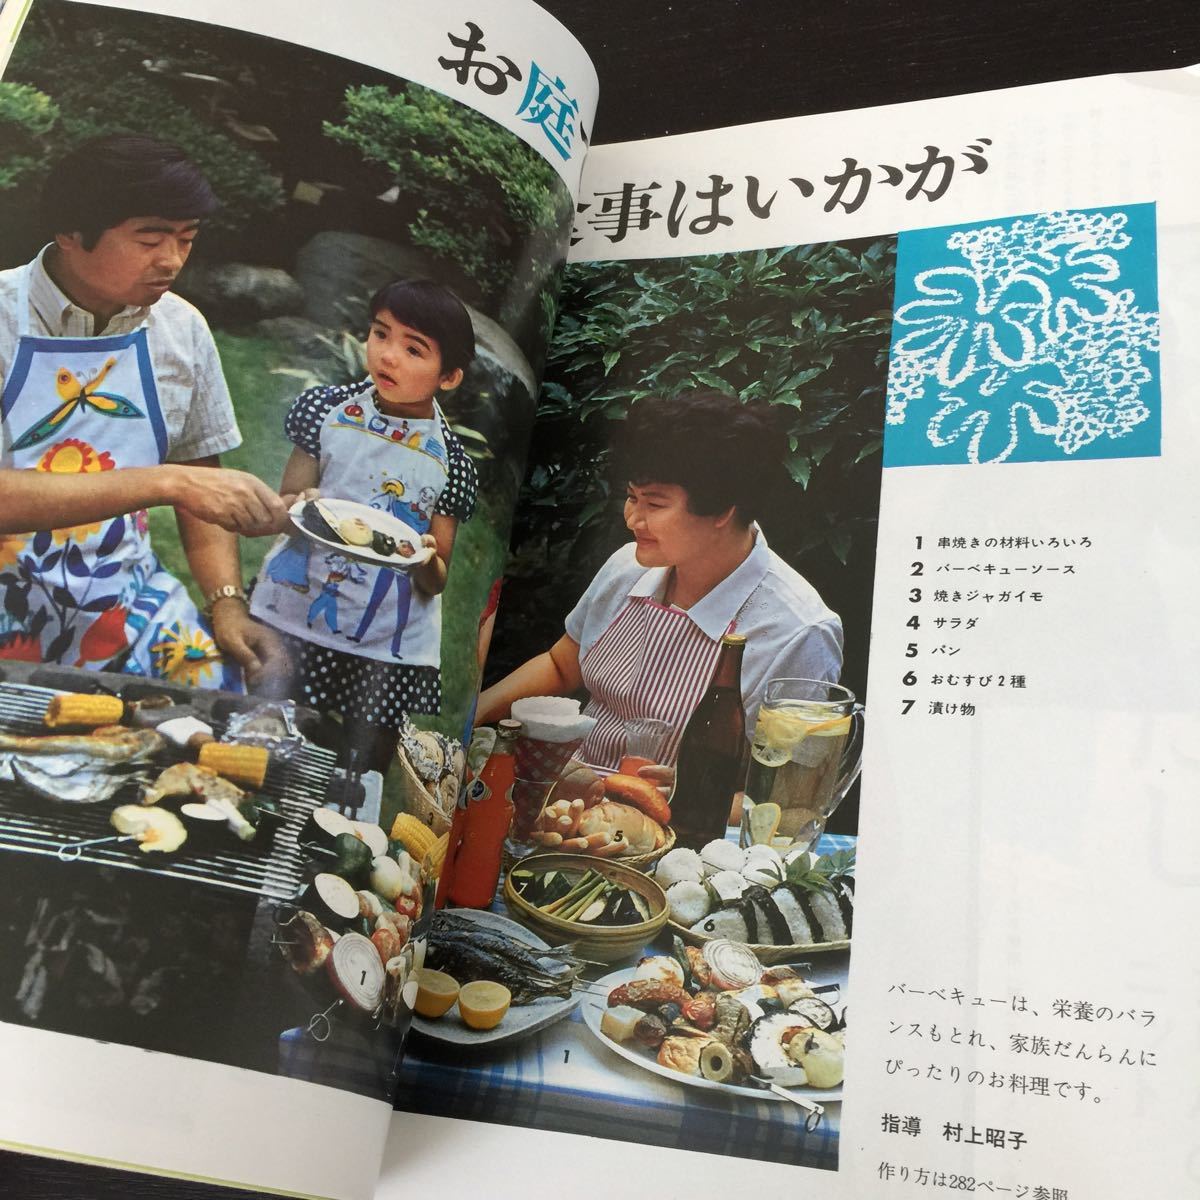 う56 家の光 昭和43年9月1日発行 レトロ 日本 料理 北海道 生活雑誌 主婦 暮らし 農業 婦人 雑誌 農協 家計簿 明治 編み物 第3の人生 病気_画像9